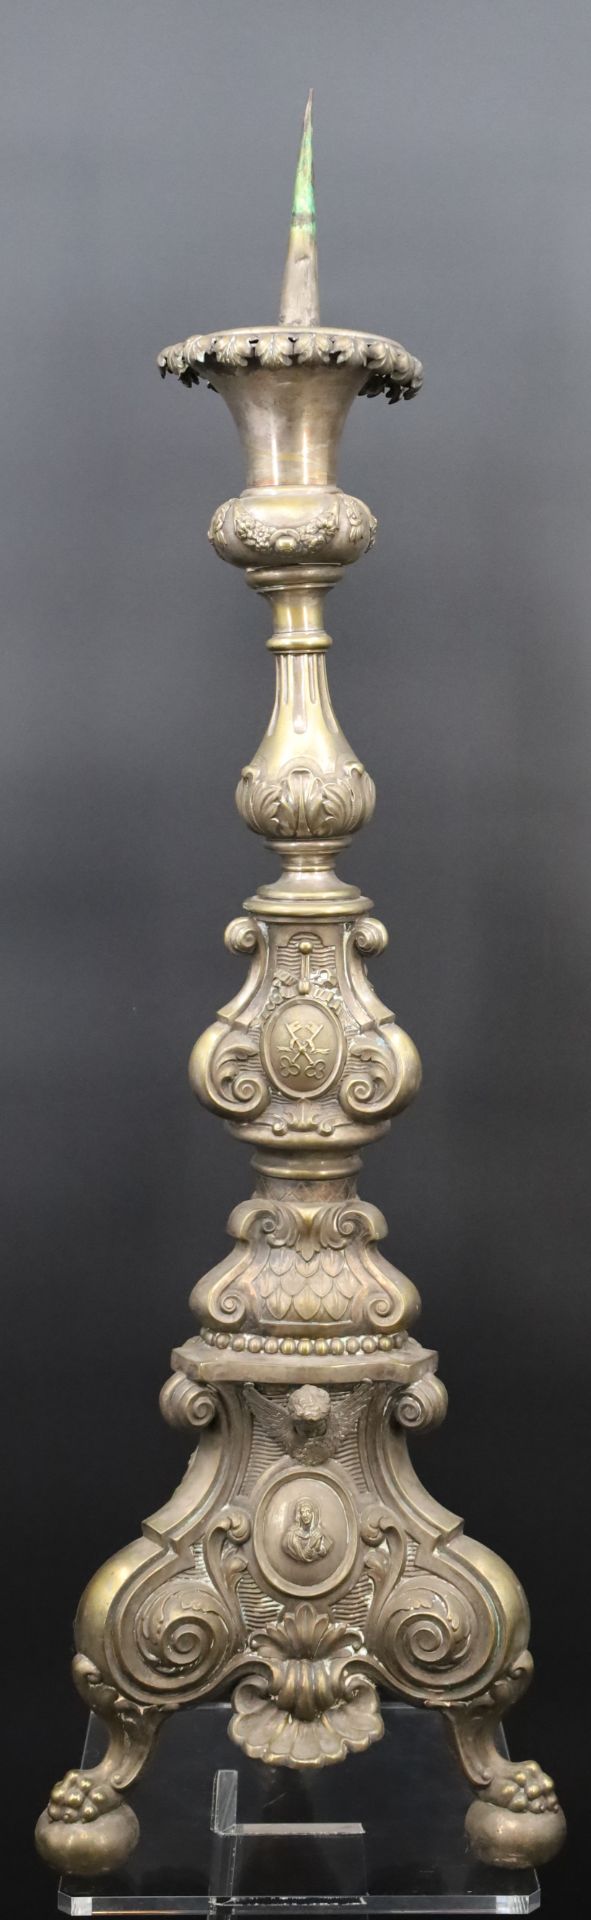 Altar candlestick. Torch. Around 1900.